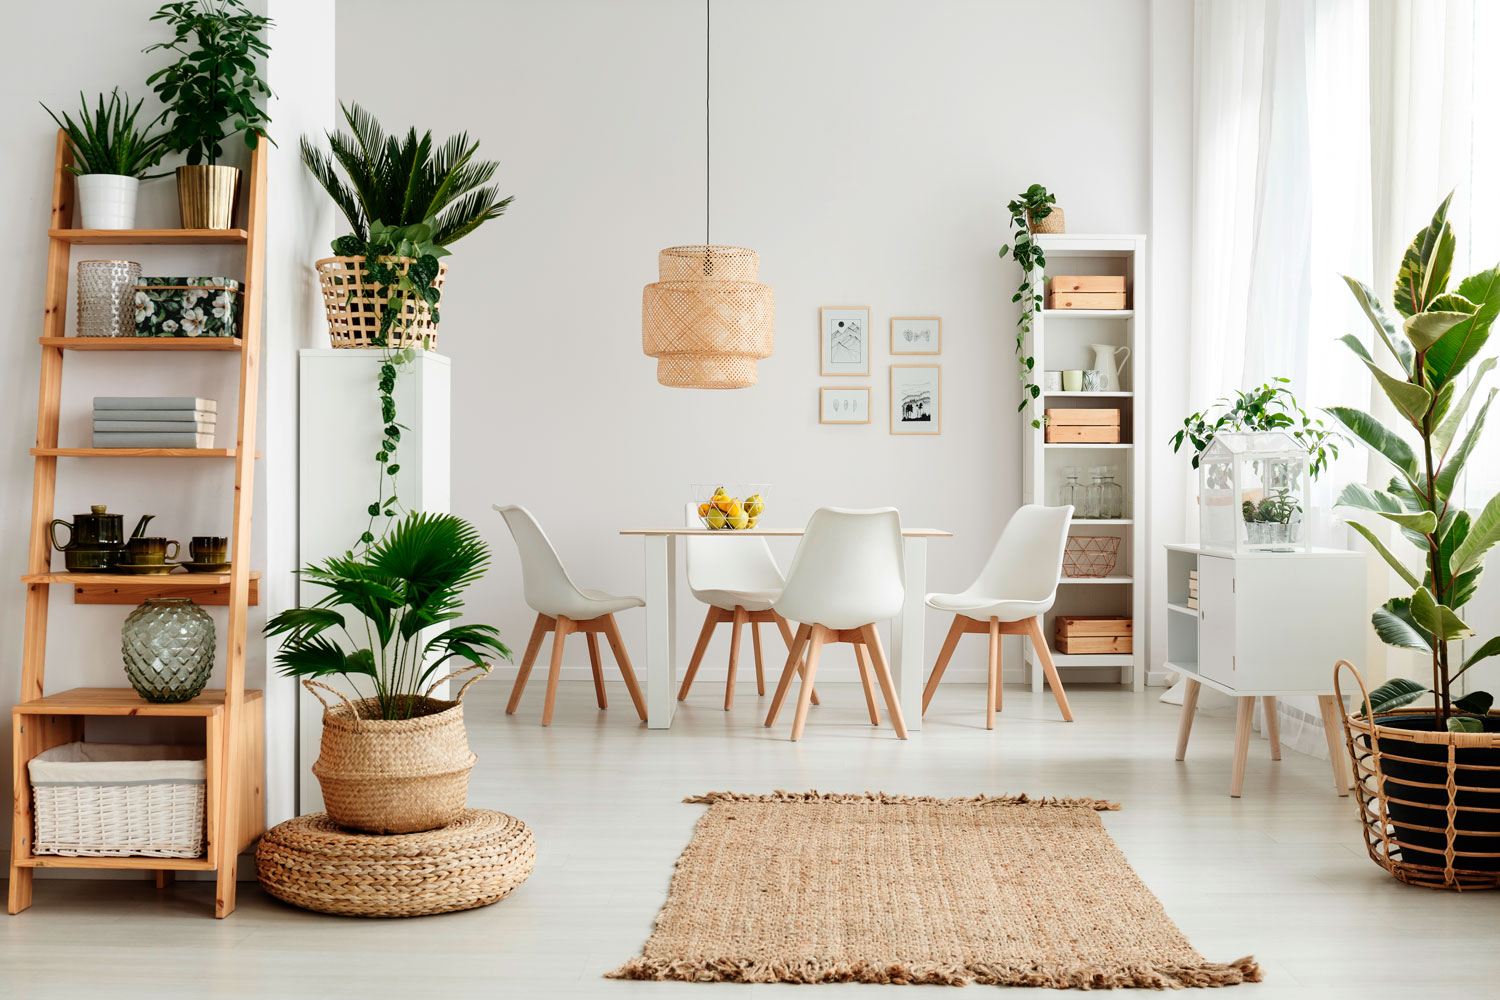 Interior Design Ideas and Home Decor for Living Room